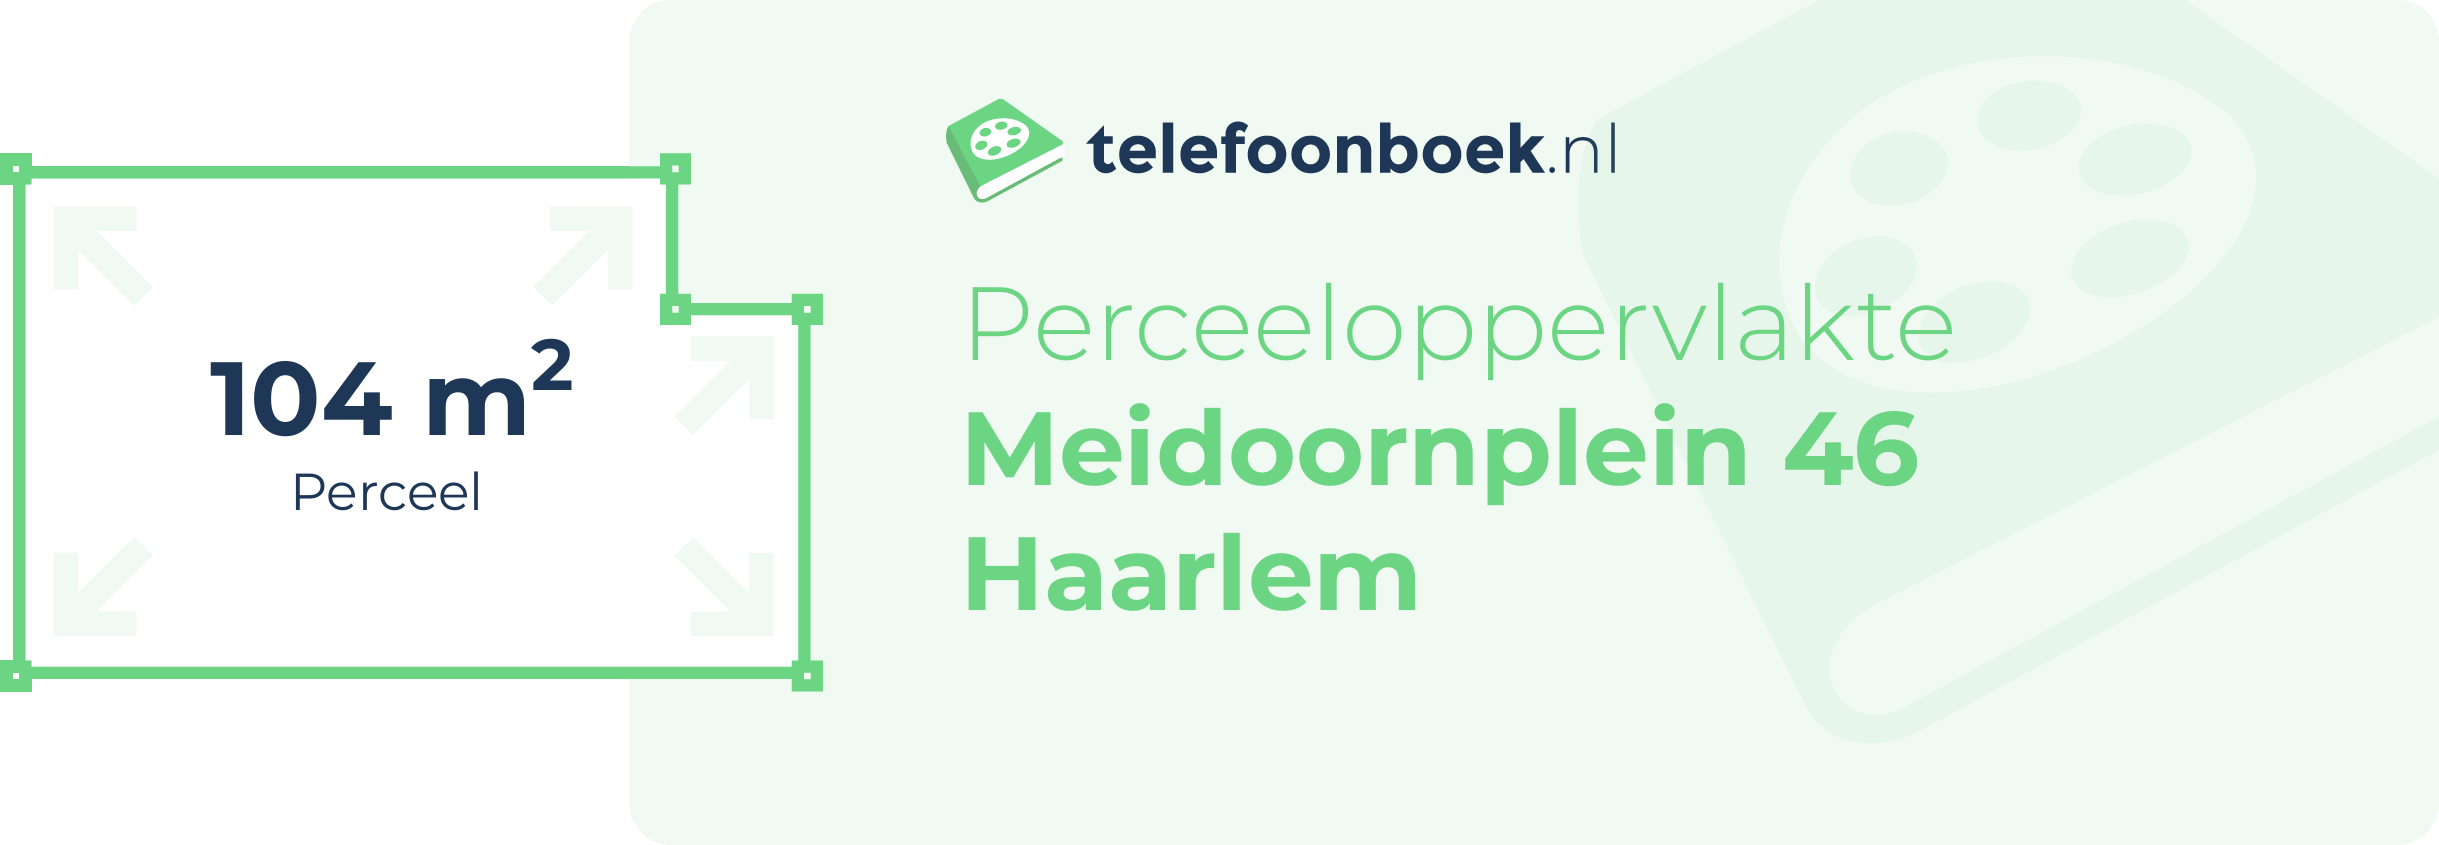 Perceeloppervlakte Meidoornplein 46 Haarlem